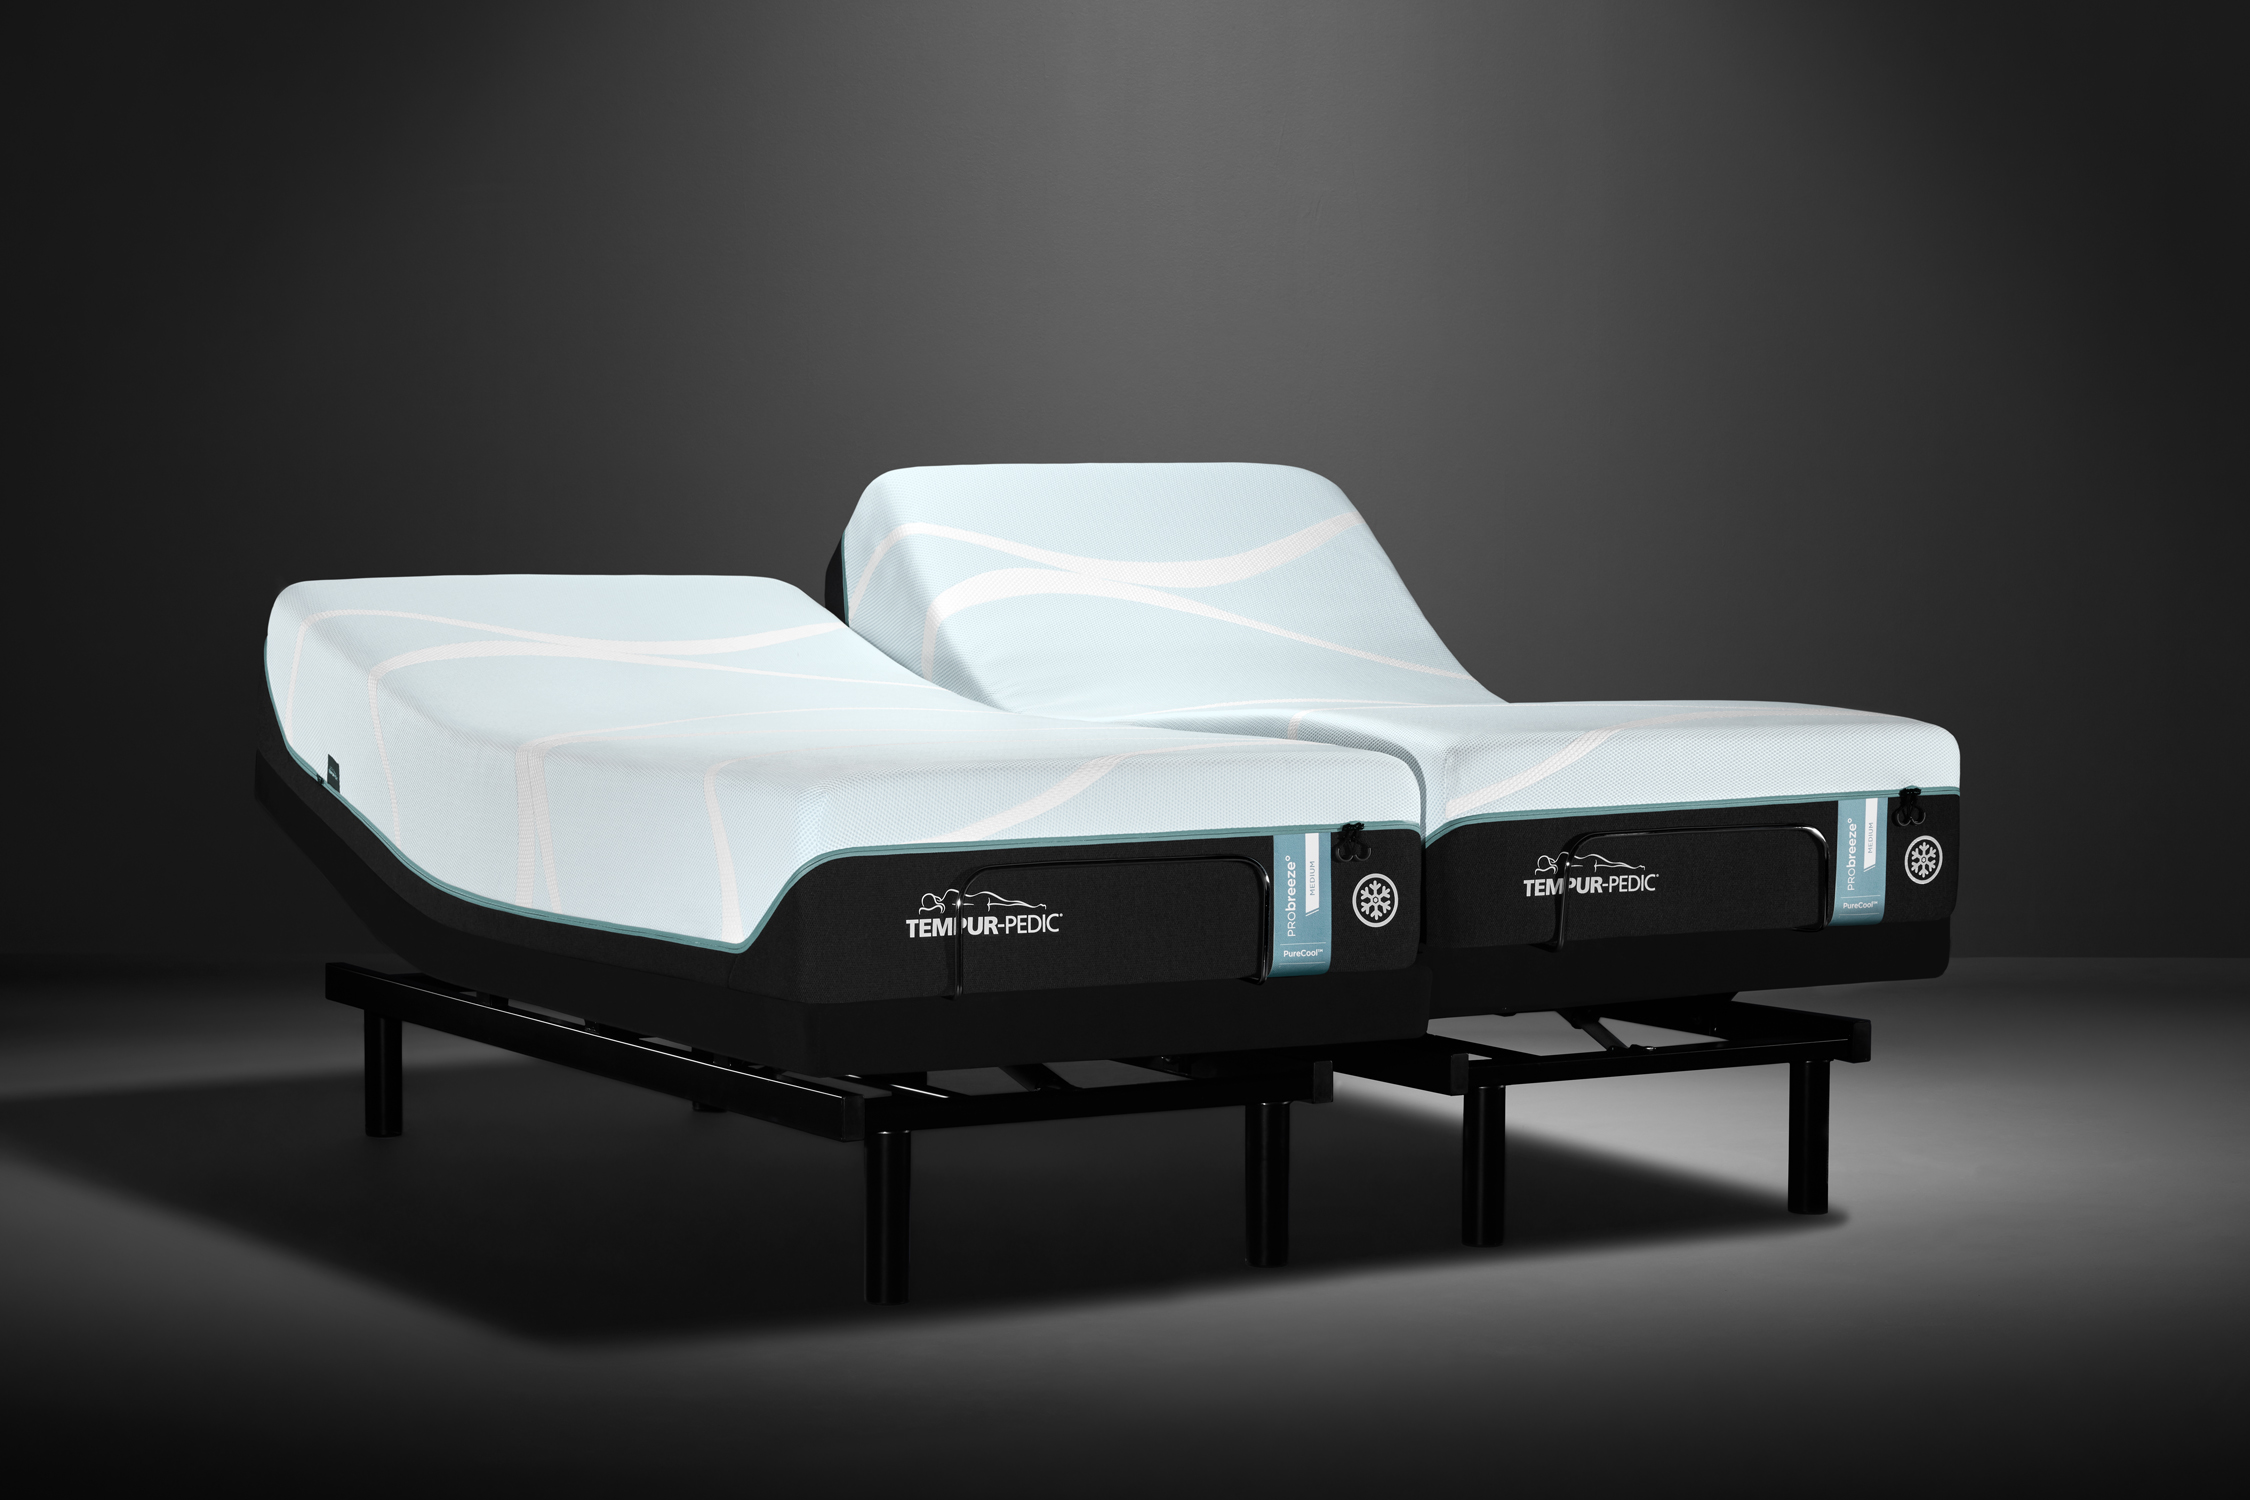 tempur-probreeze medium hybrid mattress